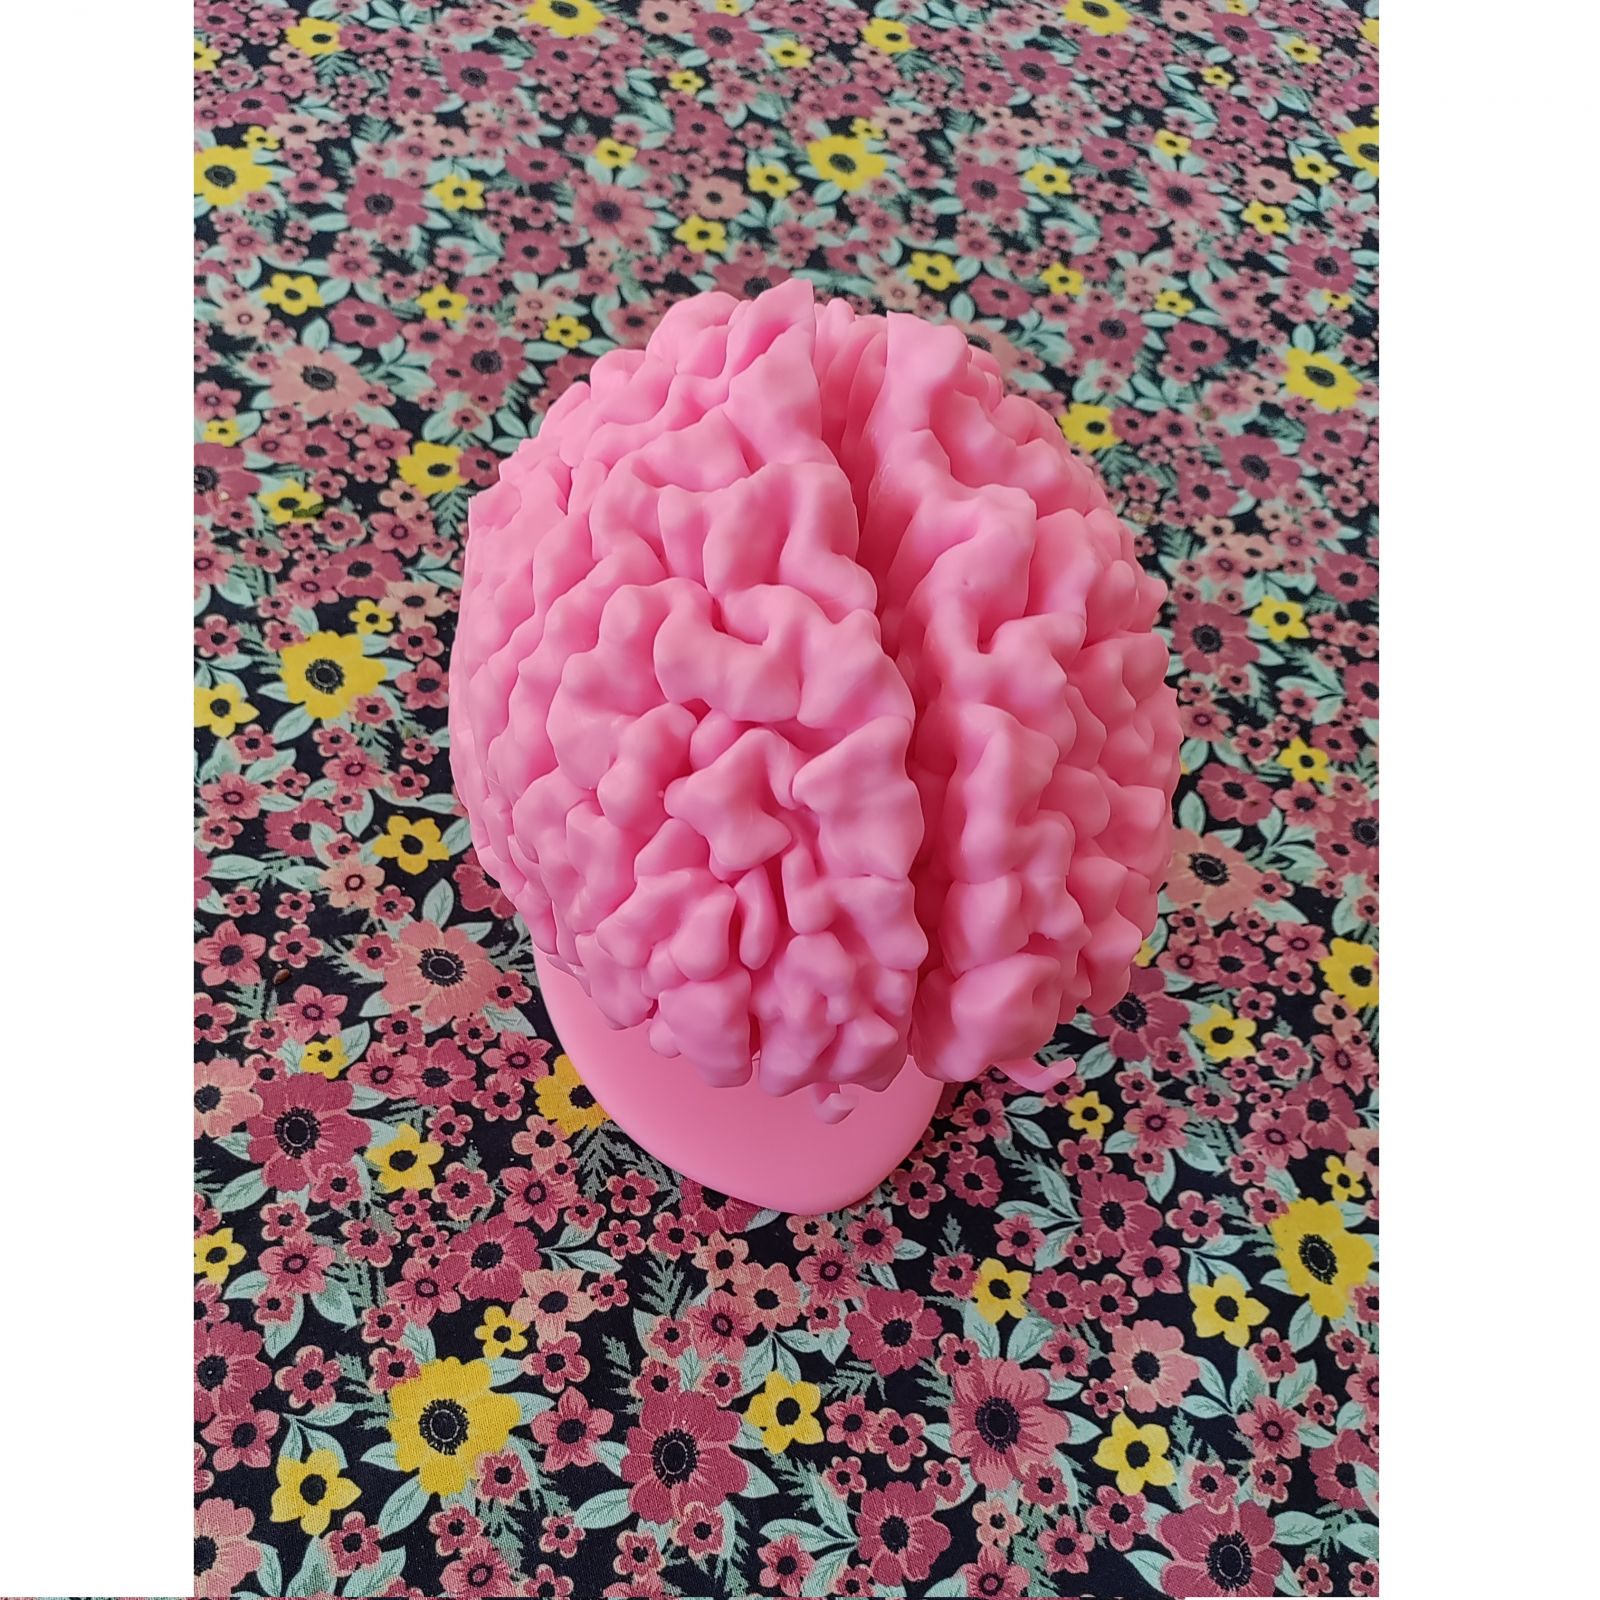 Rezonans magnetyczny - model mózgu 3D